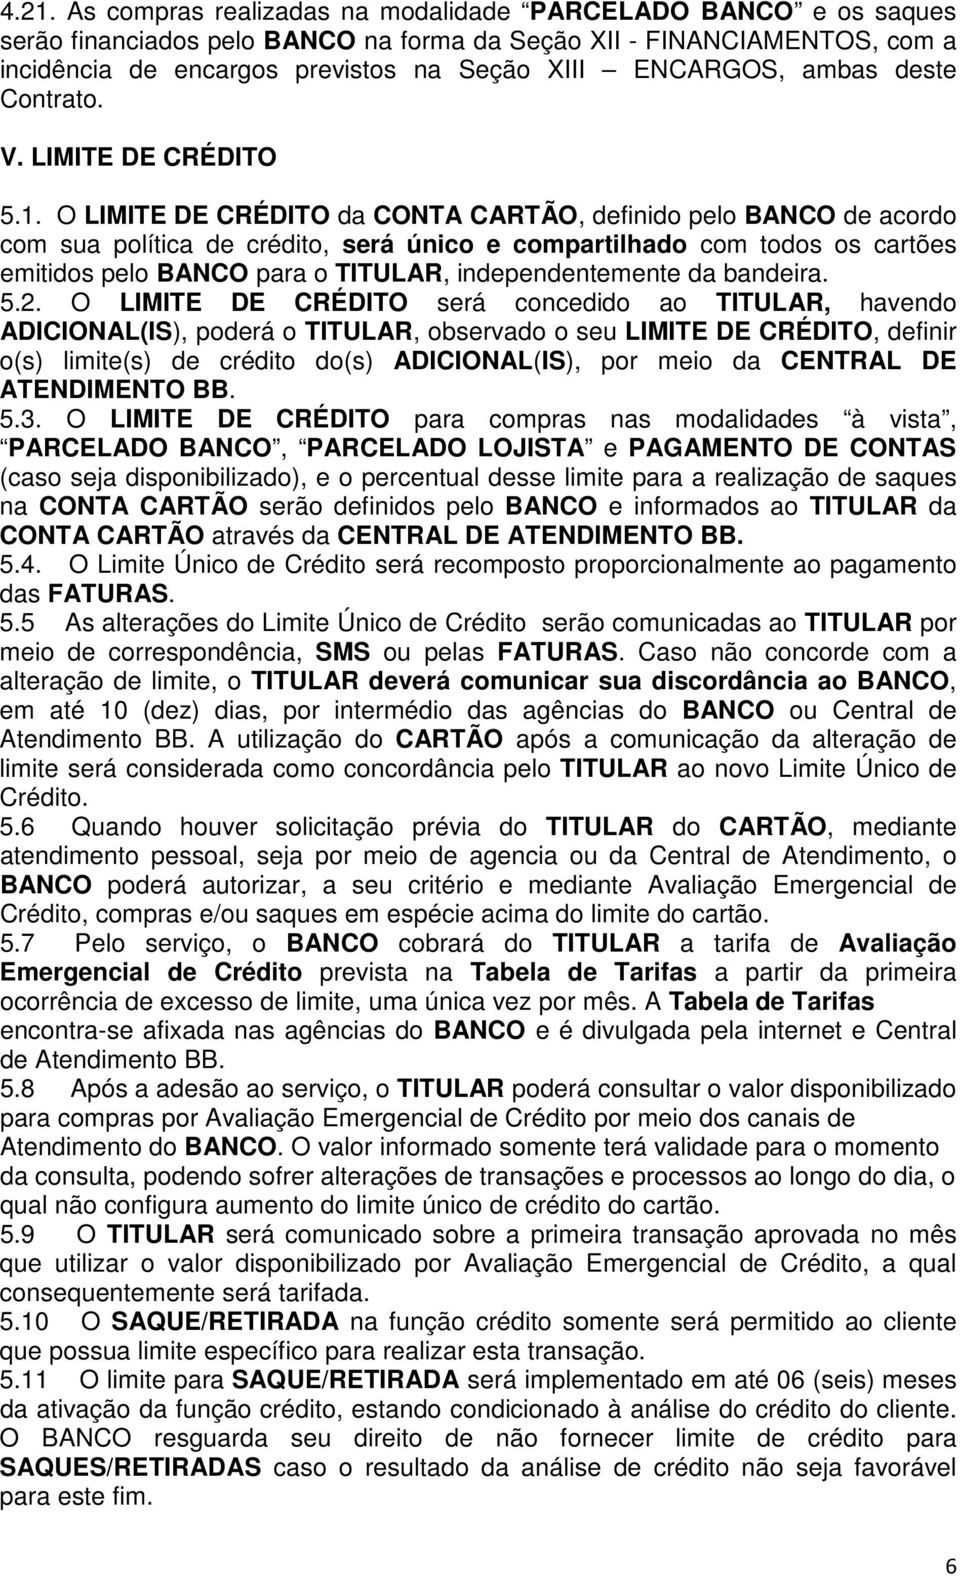 O LIMITE DE CRÉDITO da CONTA CARTÃO, definido pelo BANCO de acordo com sua política de crédito, será único e compartilhado com todos os cartões emitidos pelo BANCO para o TITULAR, independentemente